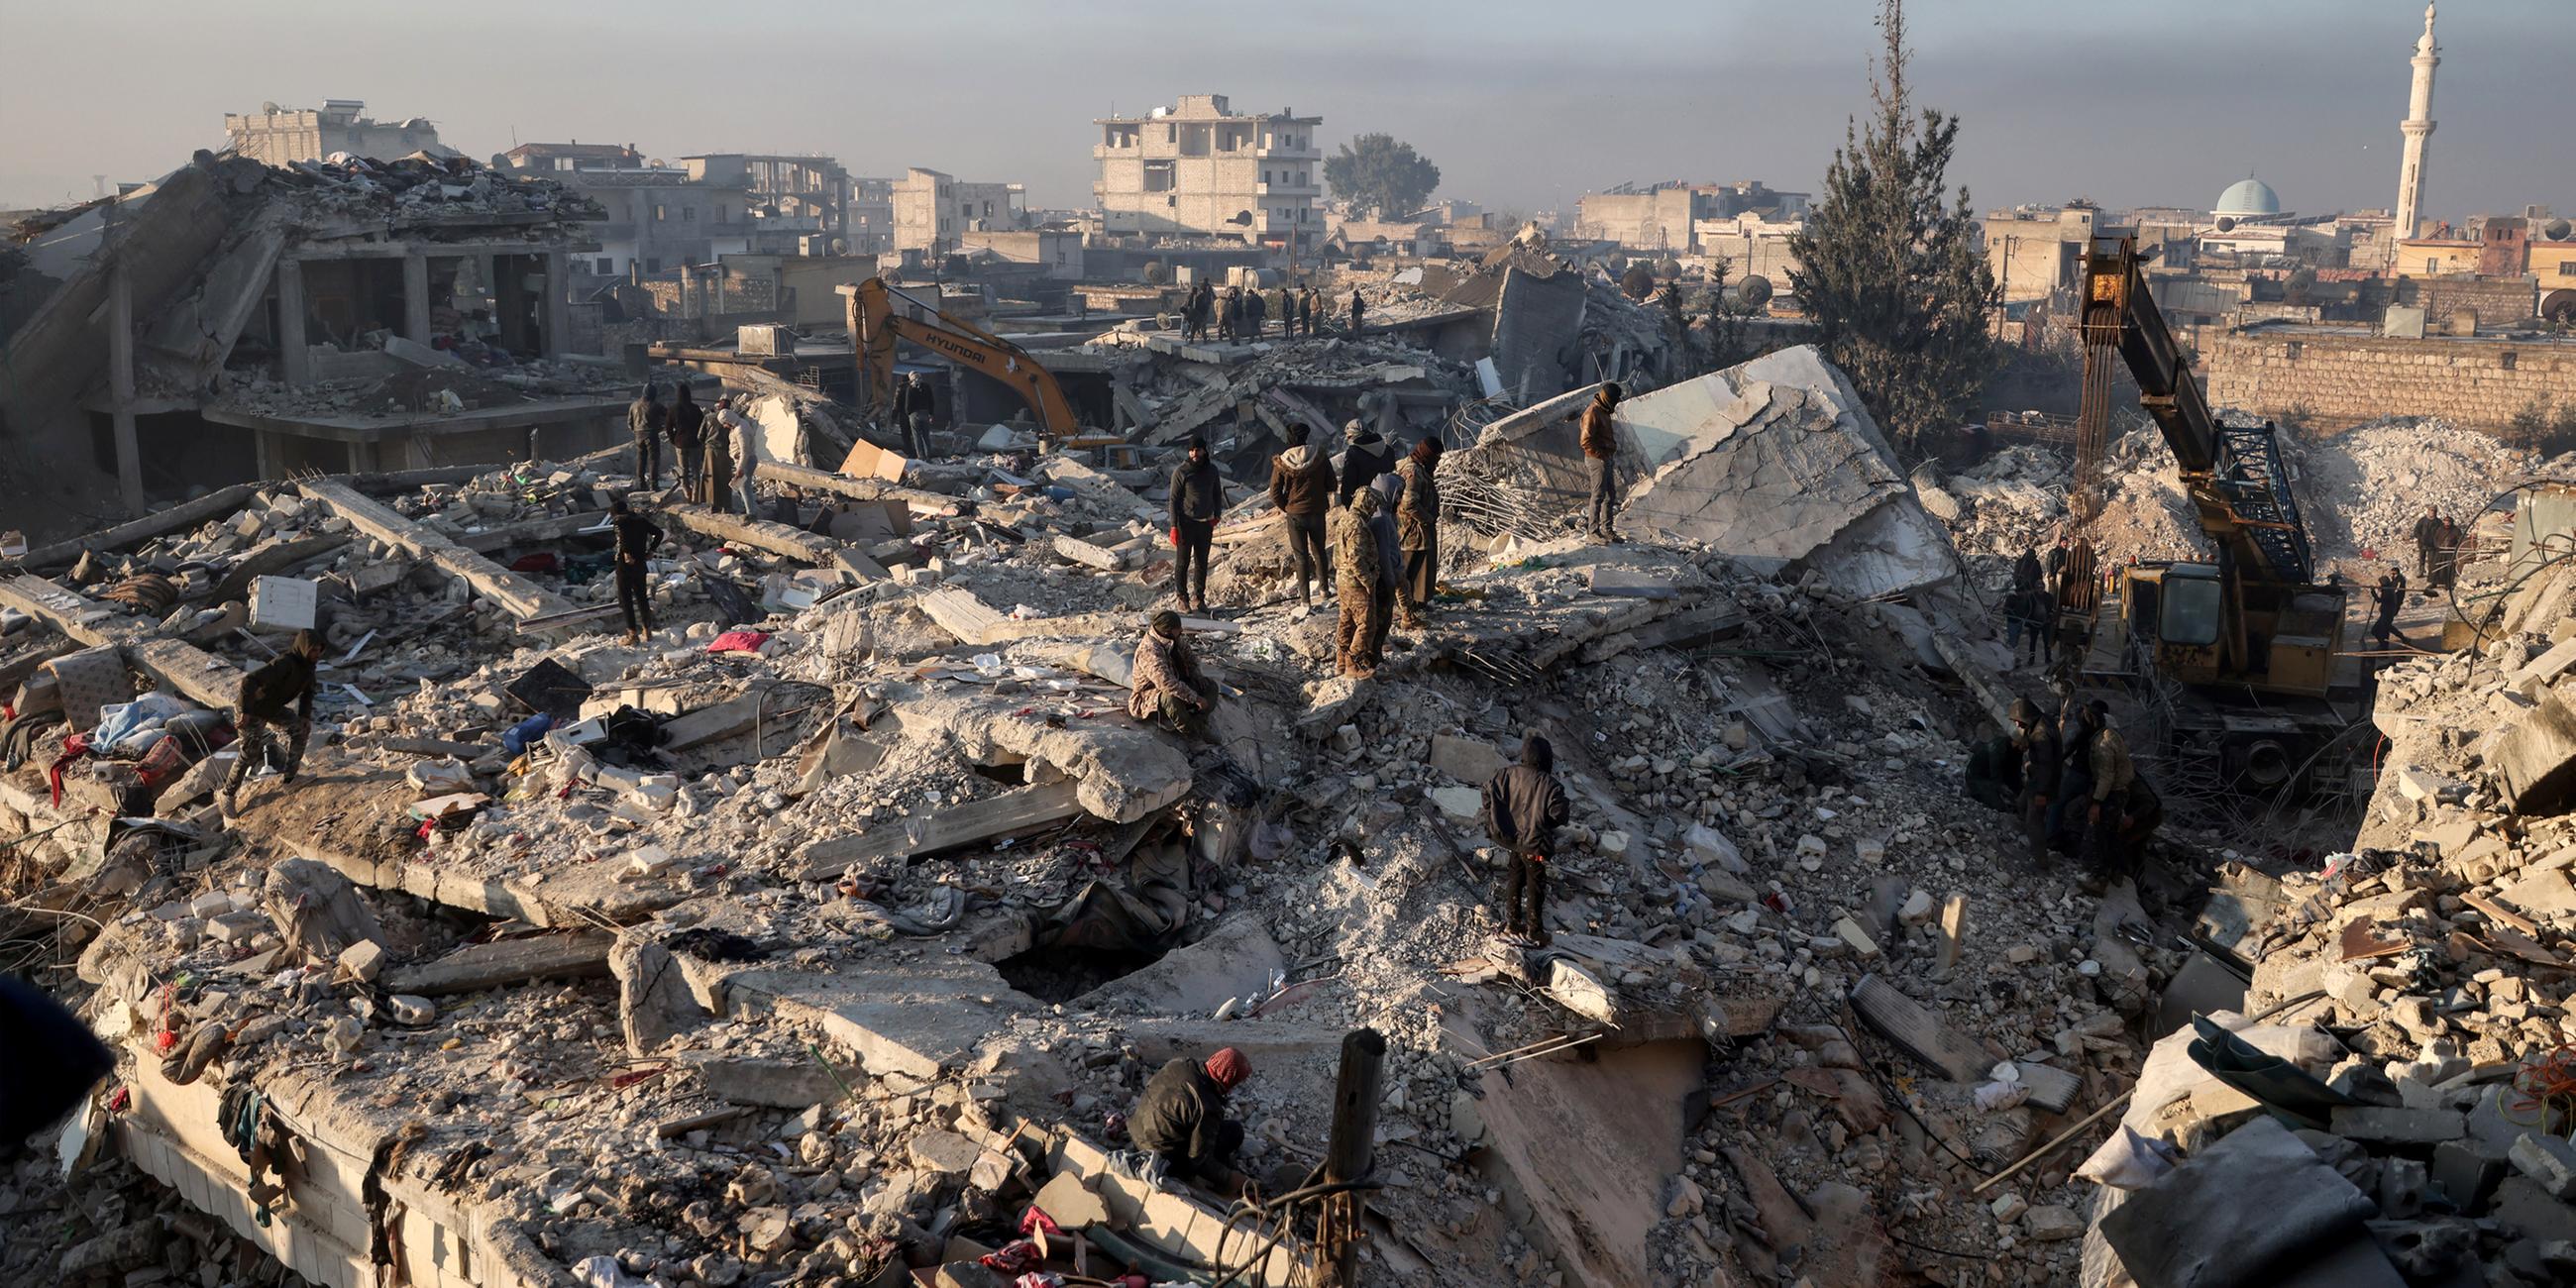 Ein Überblick über die Zerstörung, die das Erdbeben an der türkisch-syrischen Grenze angerichtet hat. Aufgenommen am 08.02.2023 in Jindires, Syrien